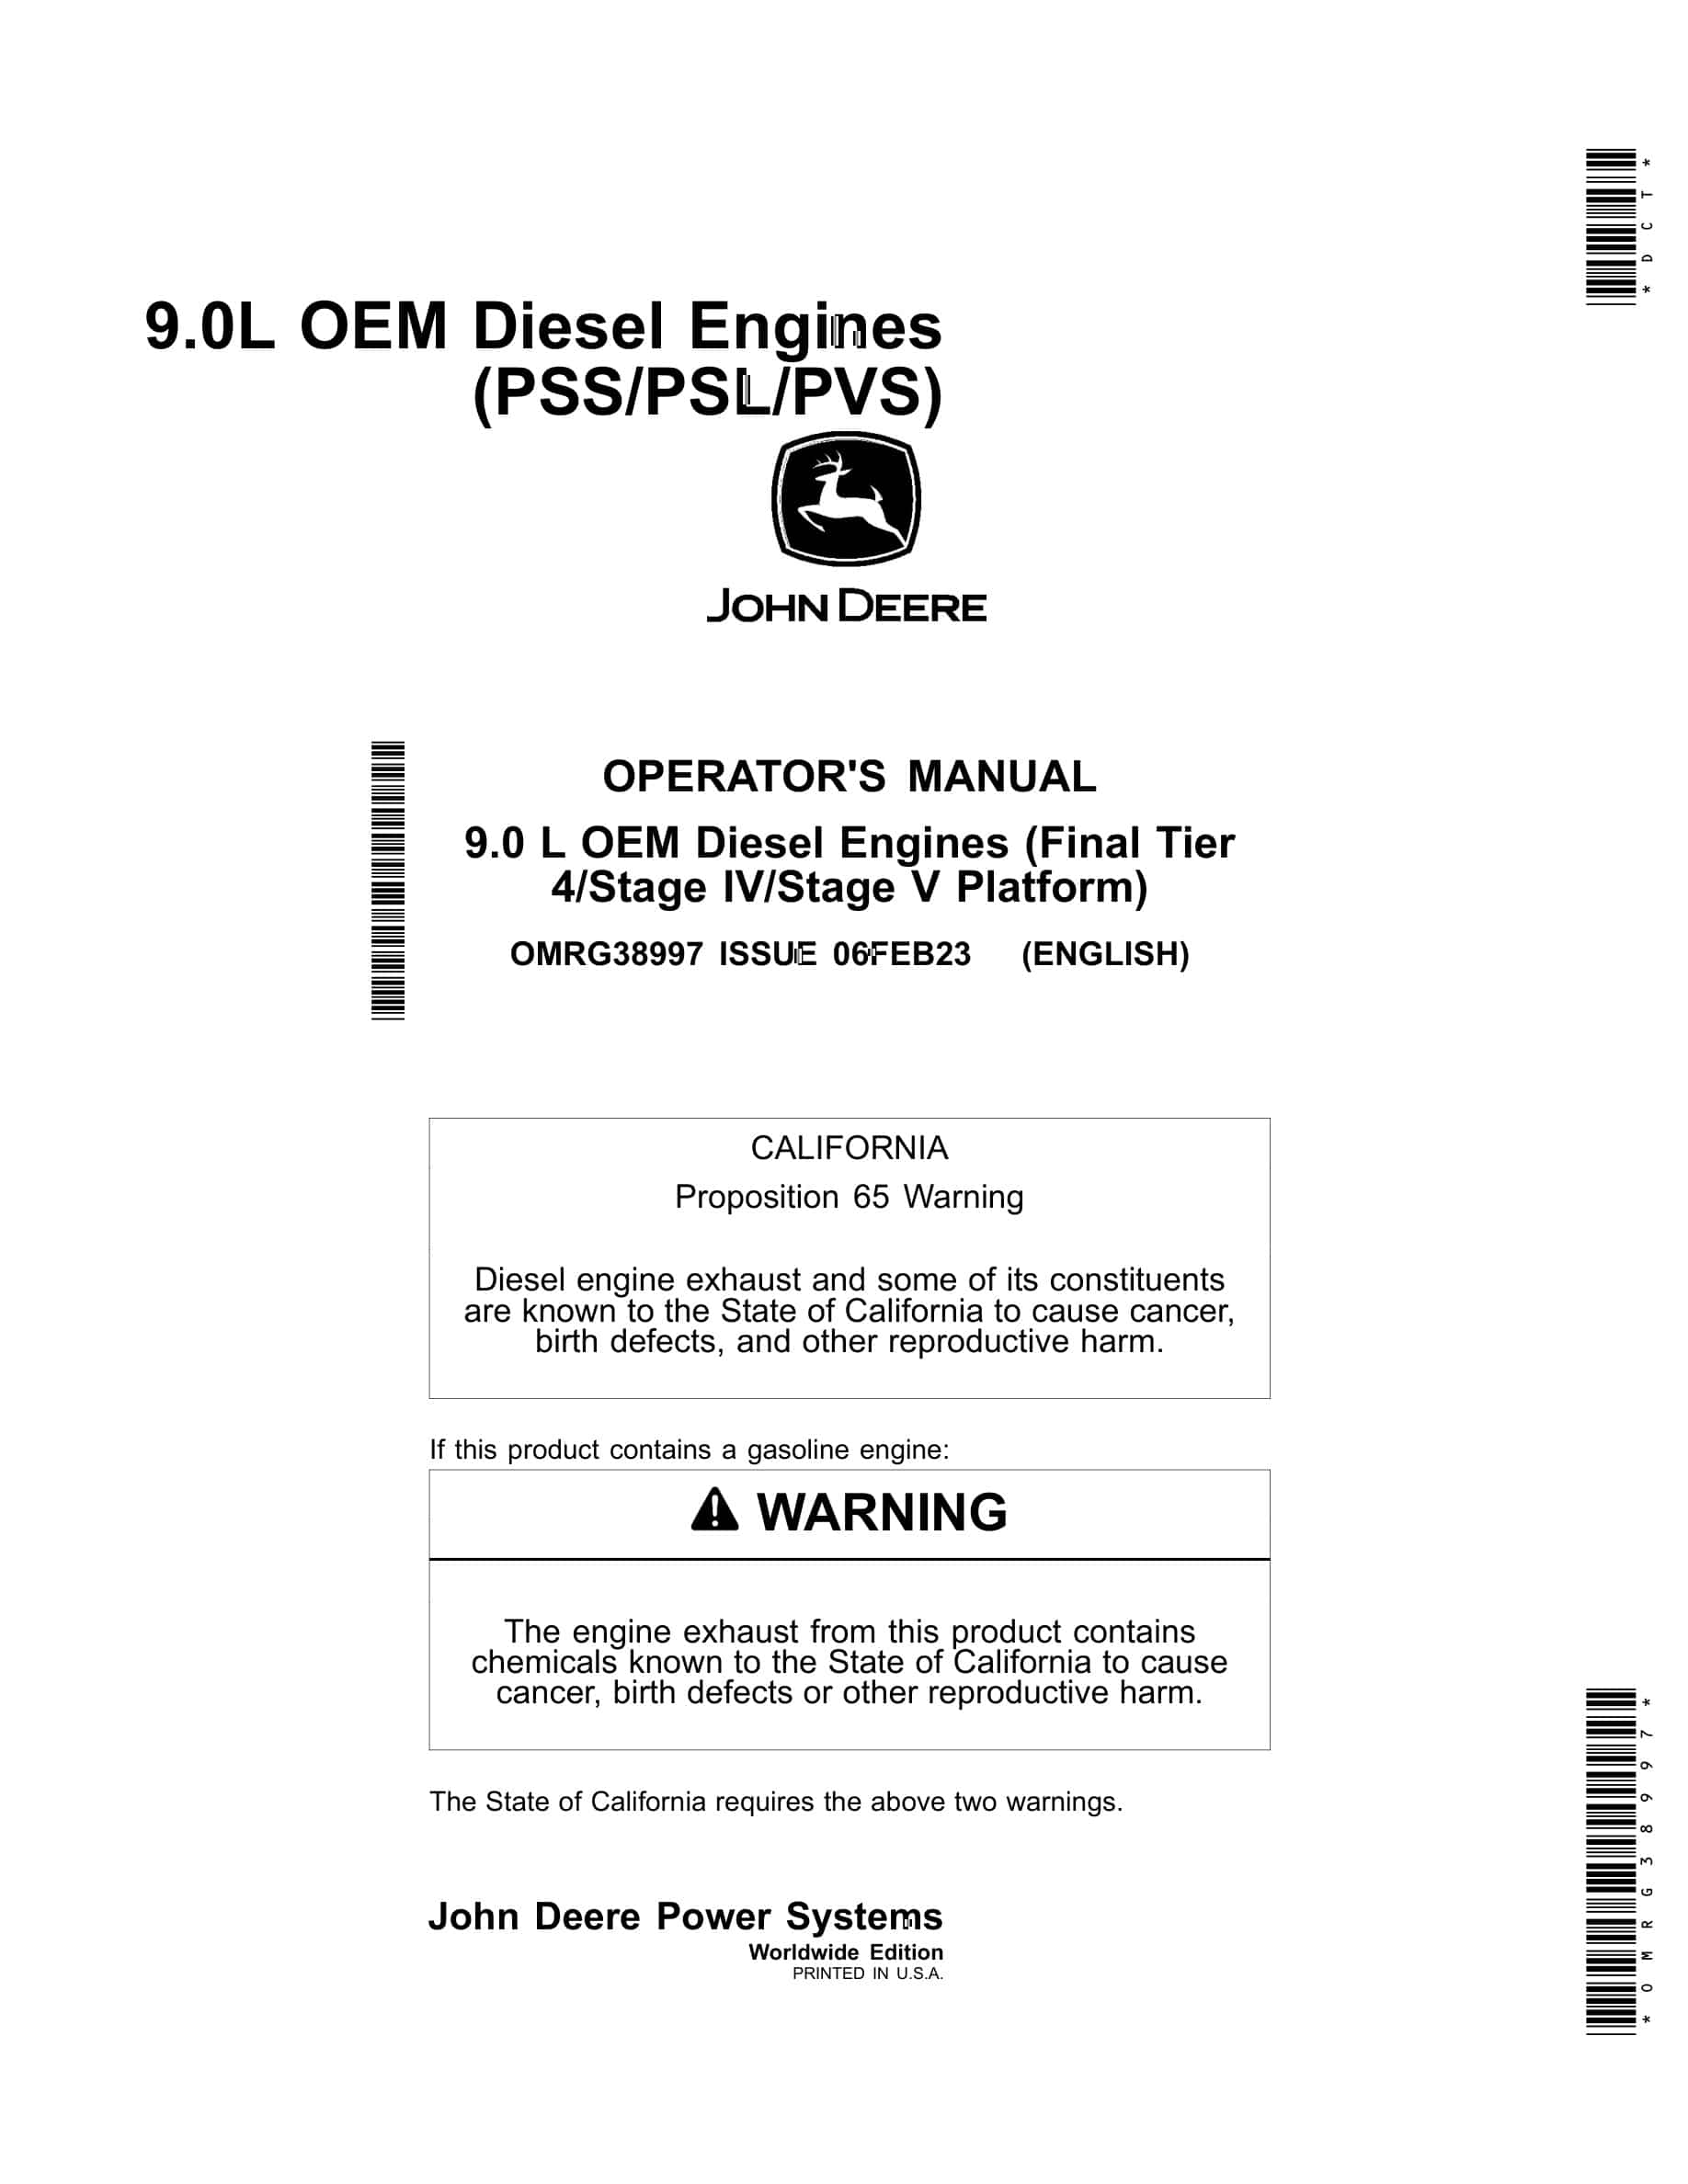 John Deere PowerTech 9.0 L OEM (Final Tier 4 Stage IV Stage V Platform) Diesel Engines Operator Manual OMRG38997-1